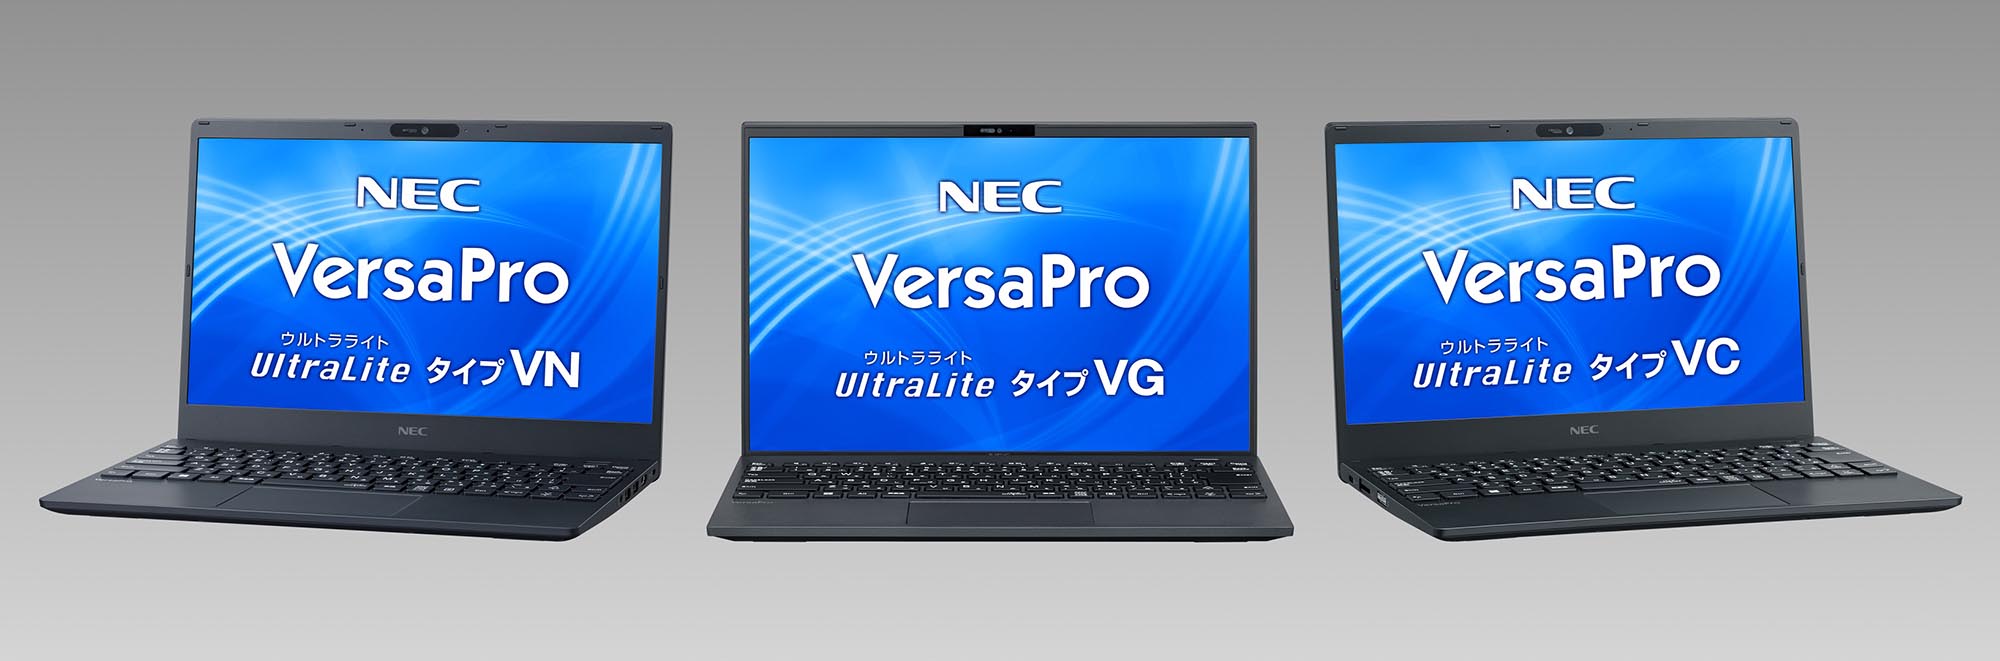 NEC、ビジネス/教育向けPC「VersaPro」「Mate」新モデルを投入 軽量 ...